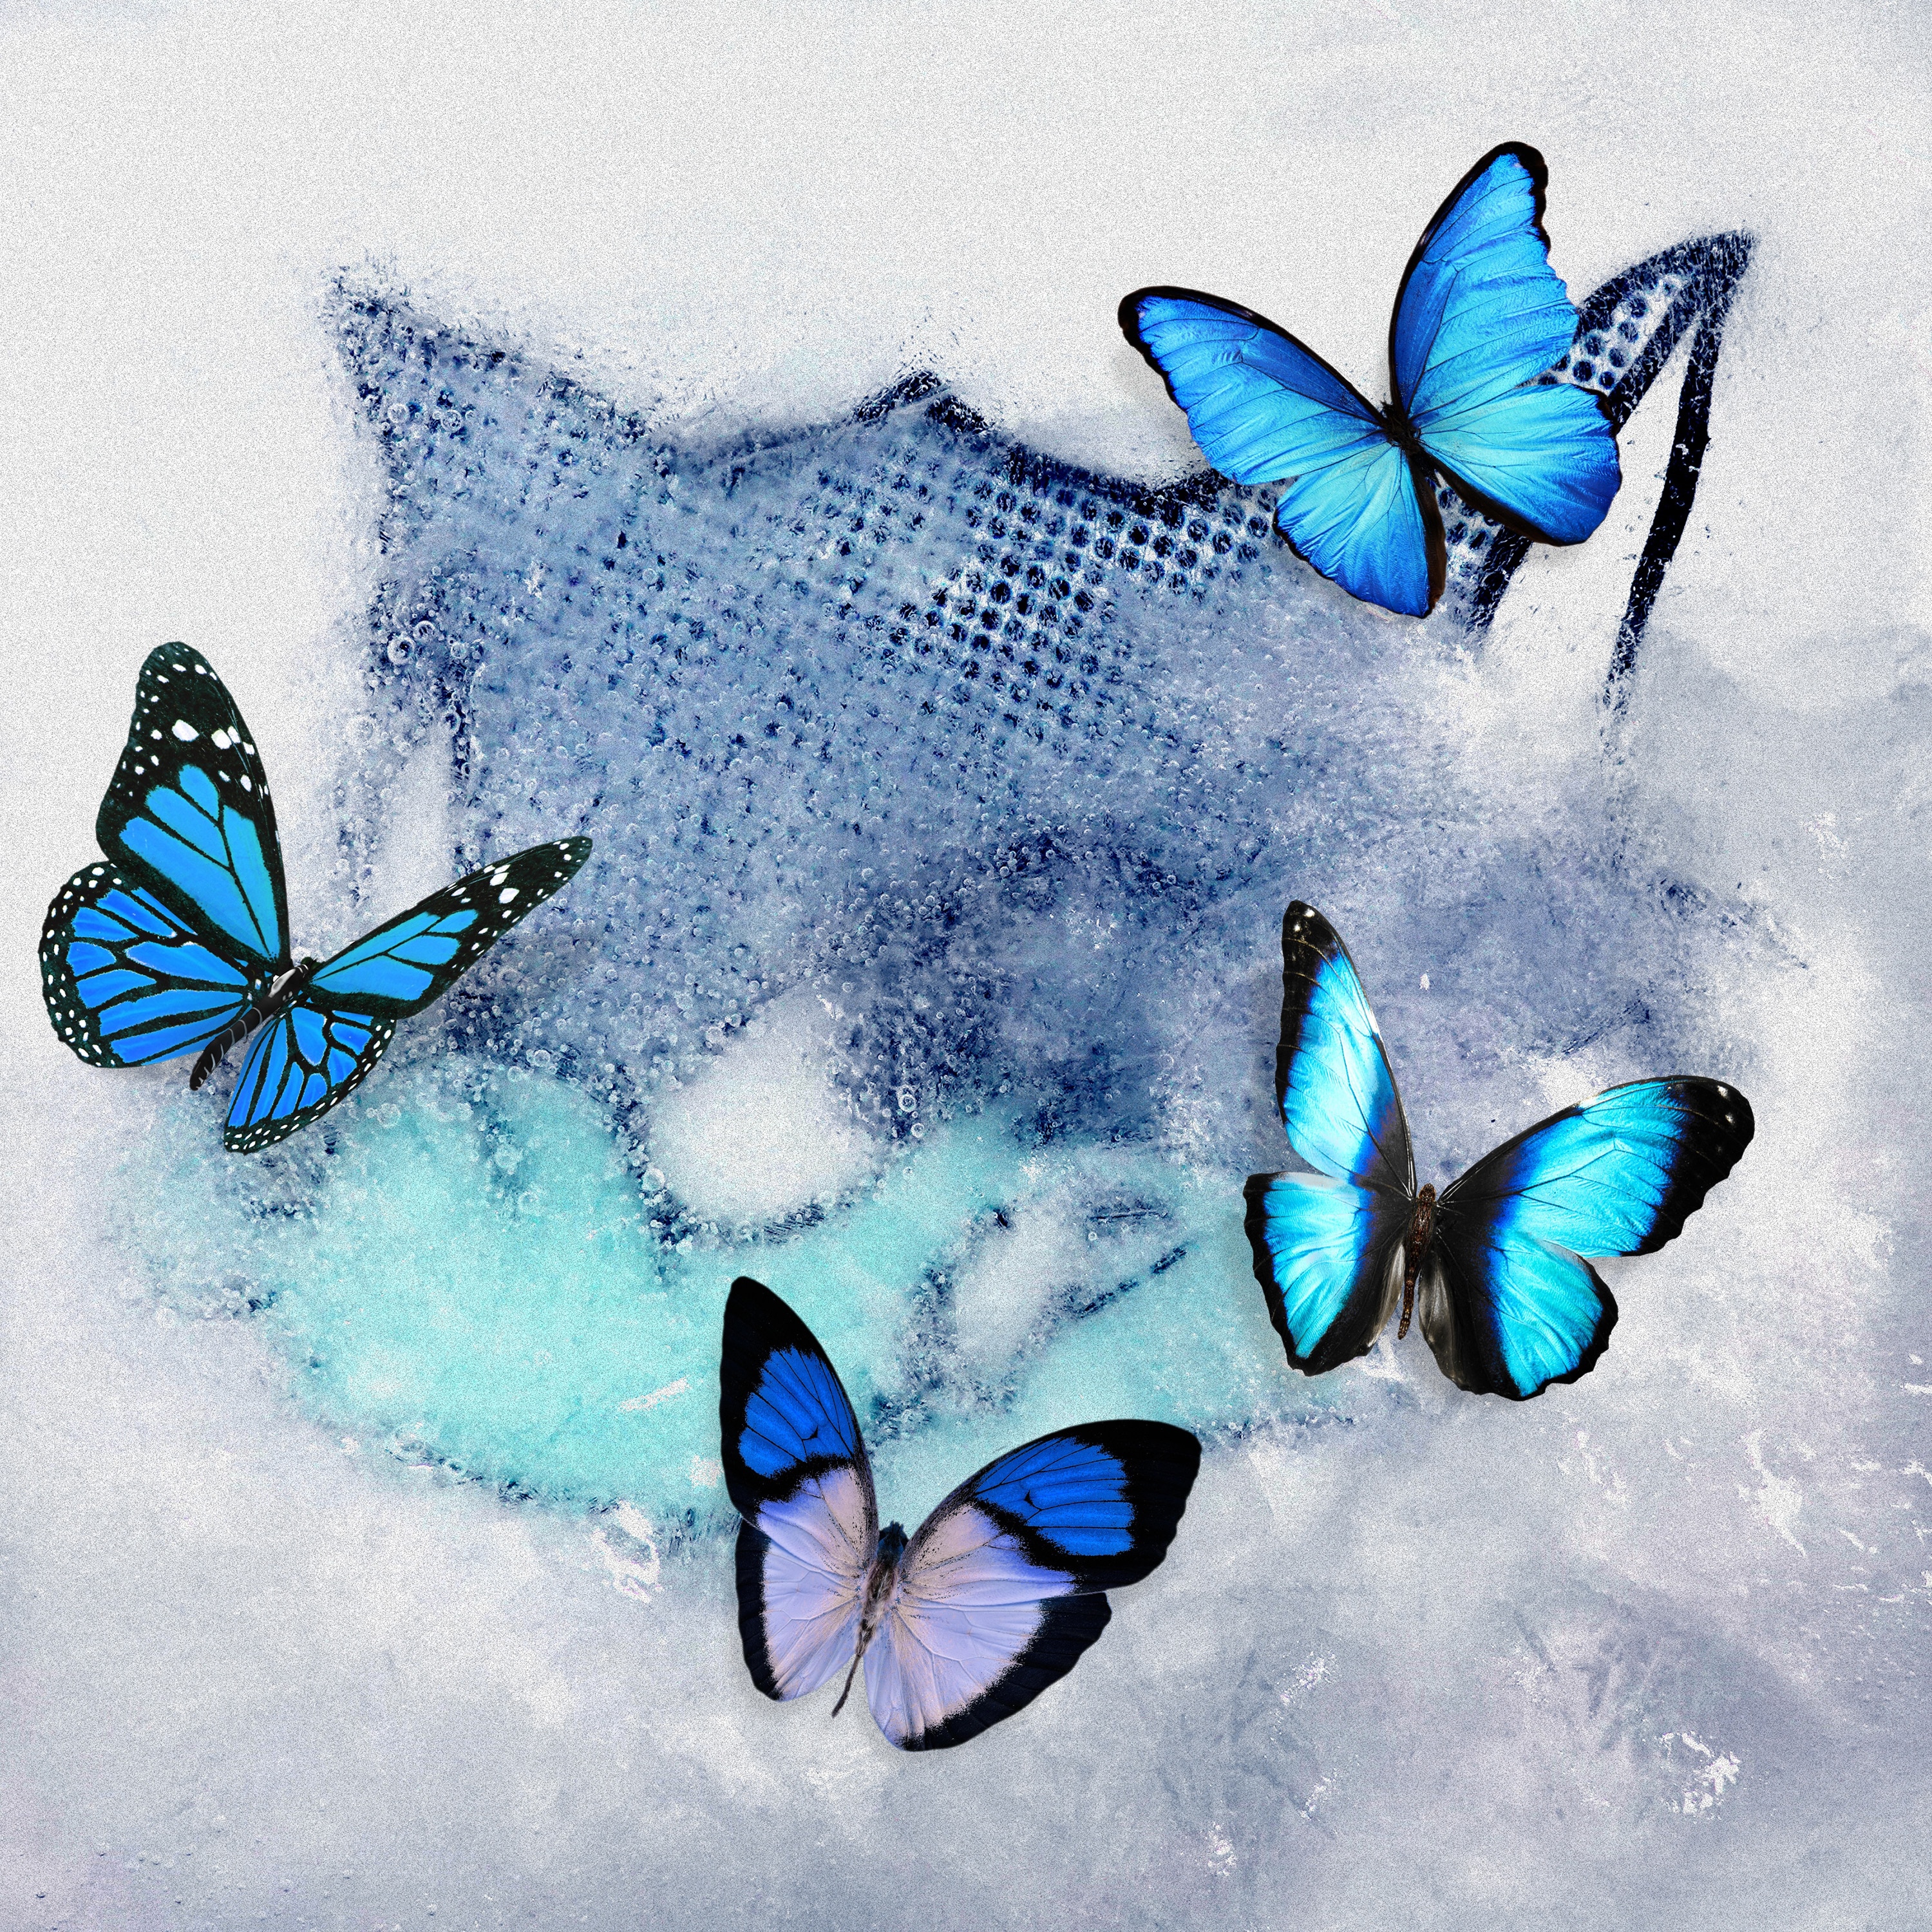 「Frozen Butterfly」